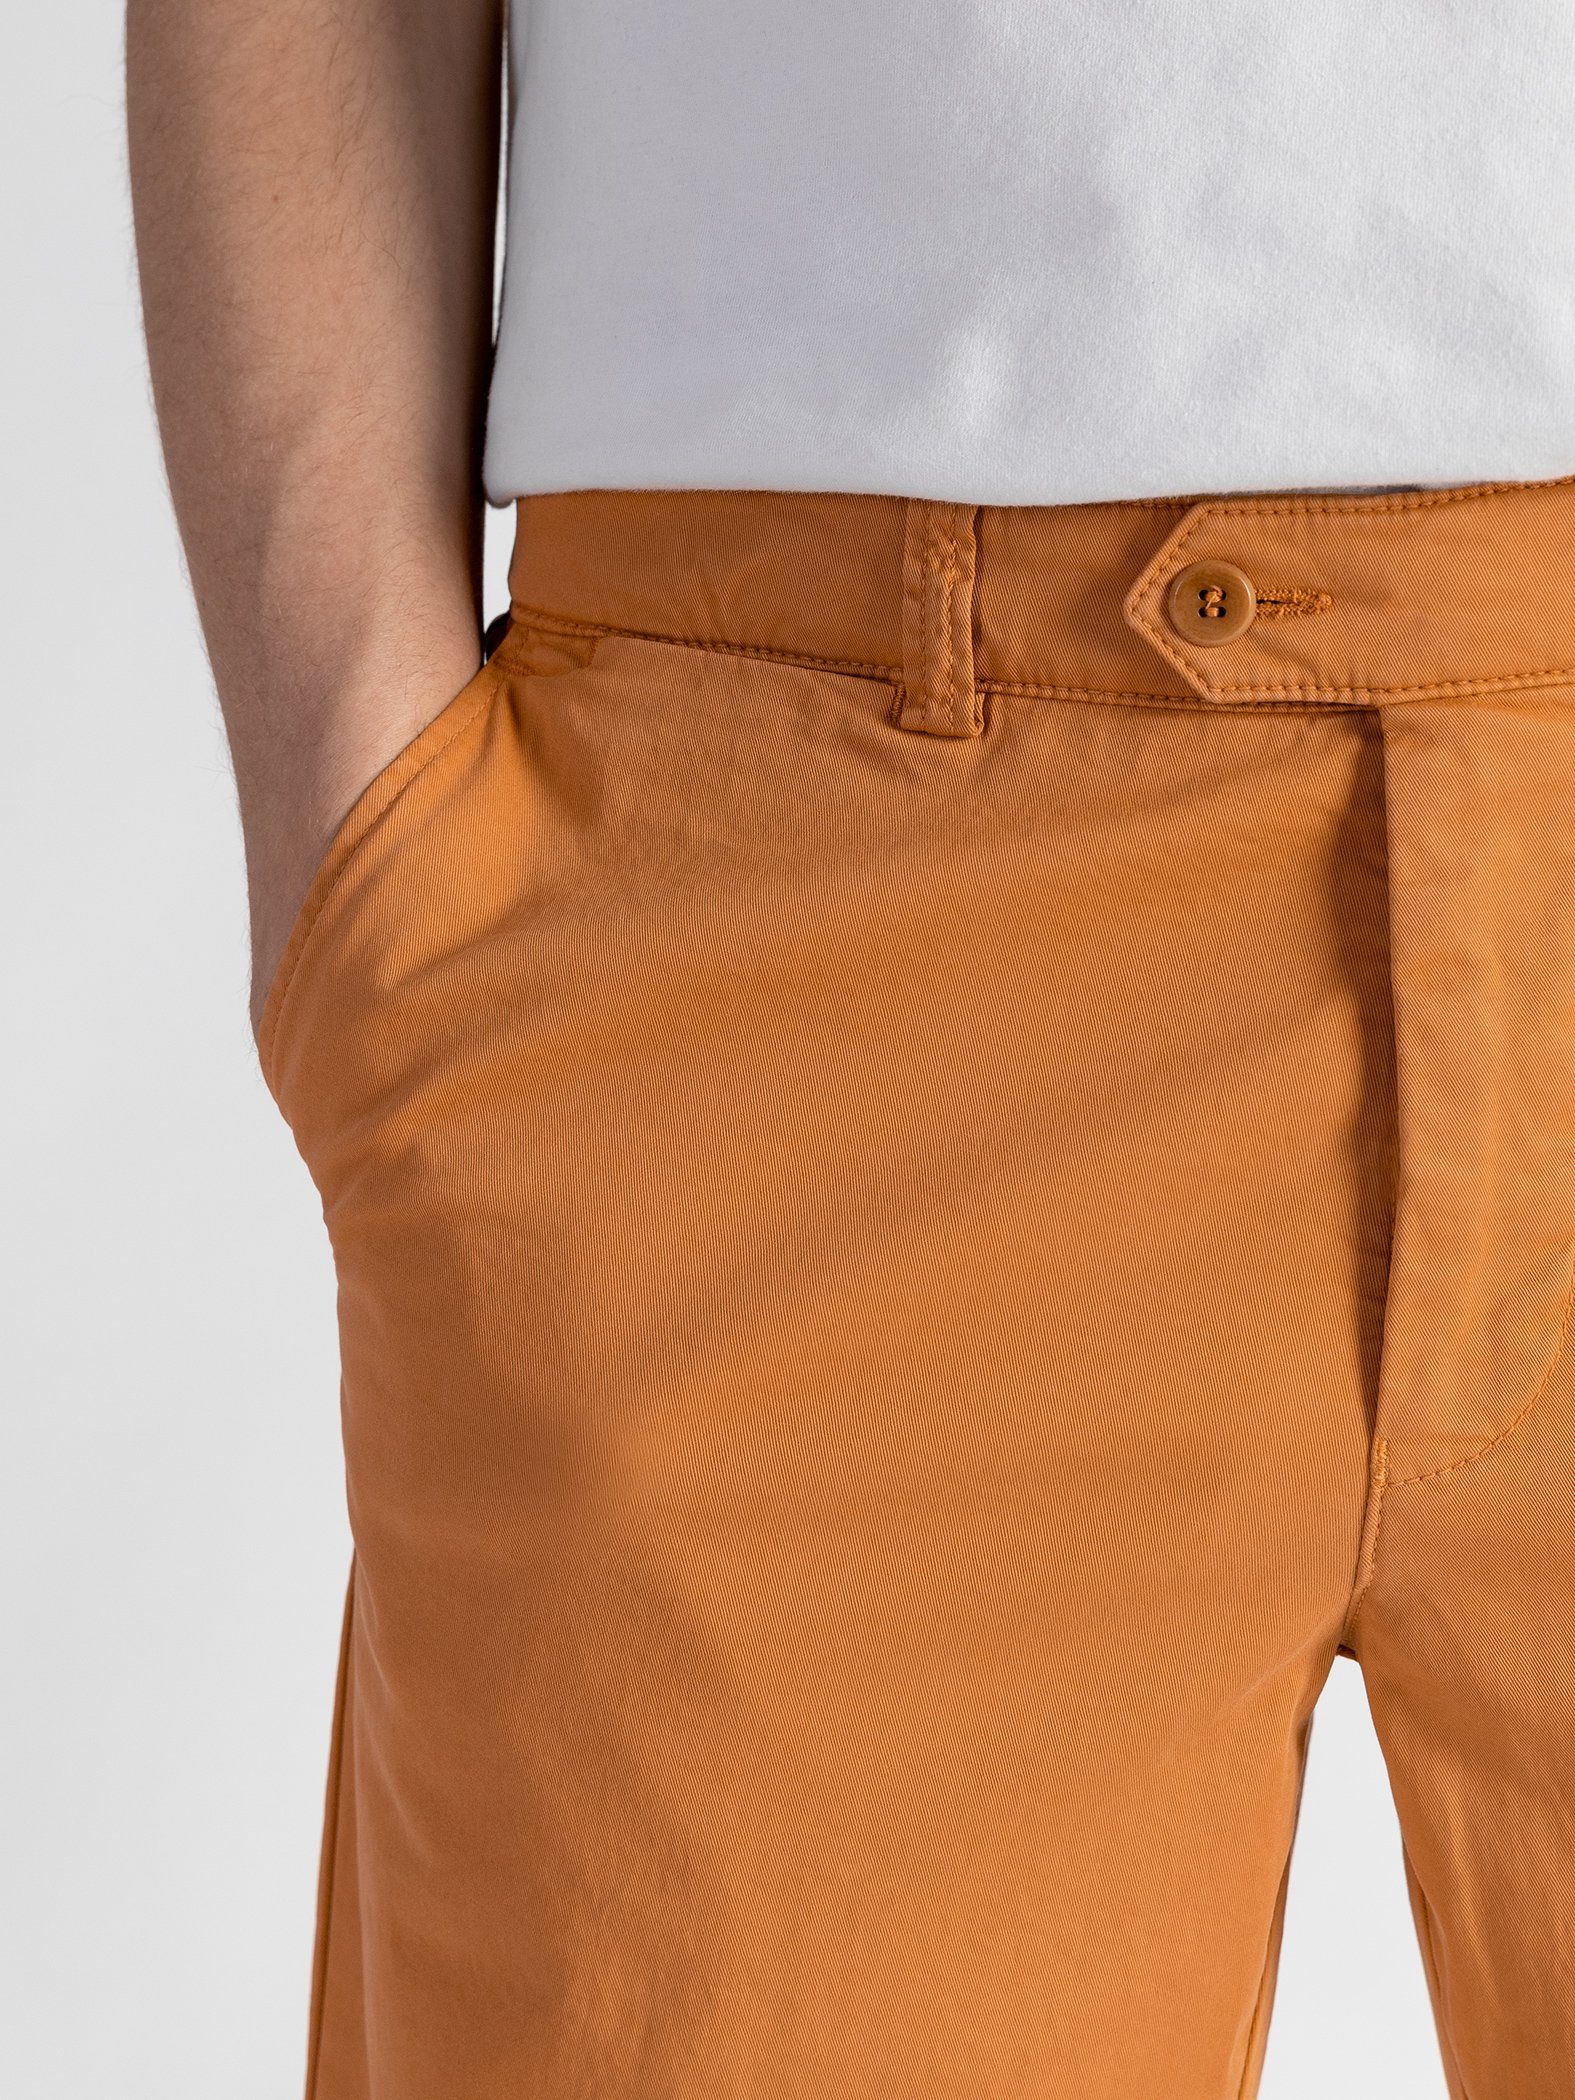 TwoMates Shorts mit GOTS-zertifiziert Farbauswahl, Shorts elastischem Orange Bund